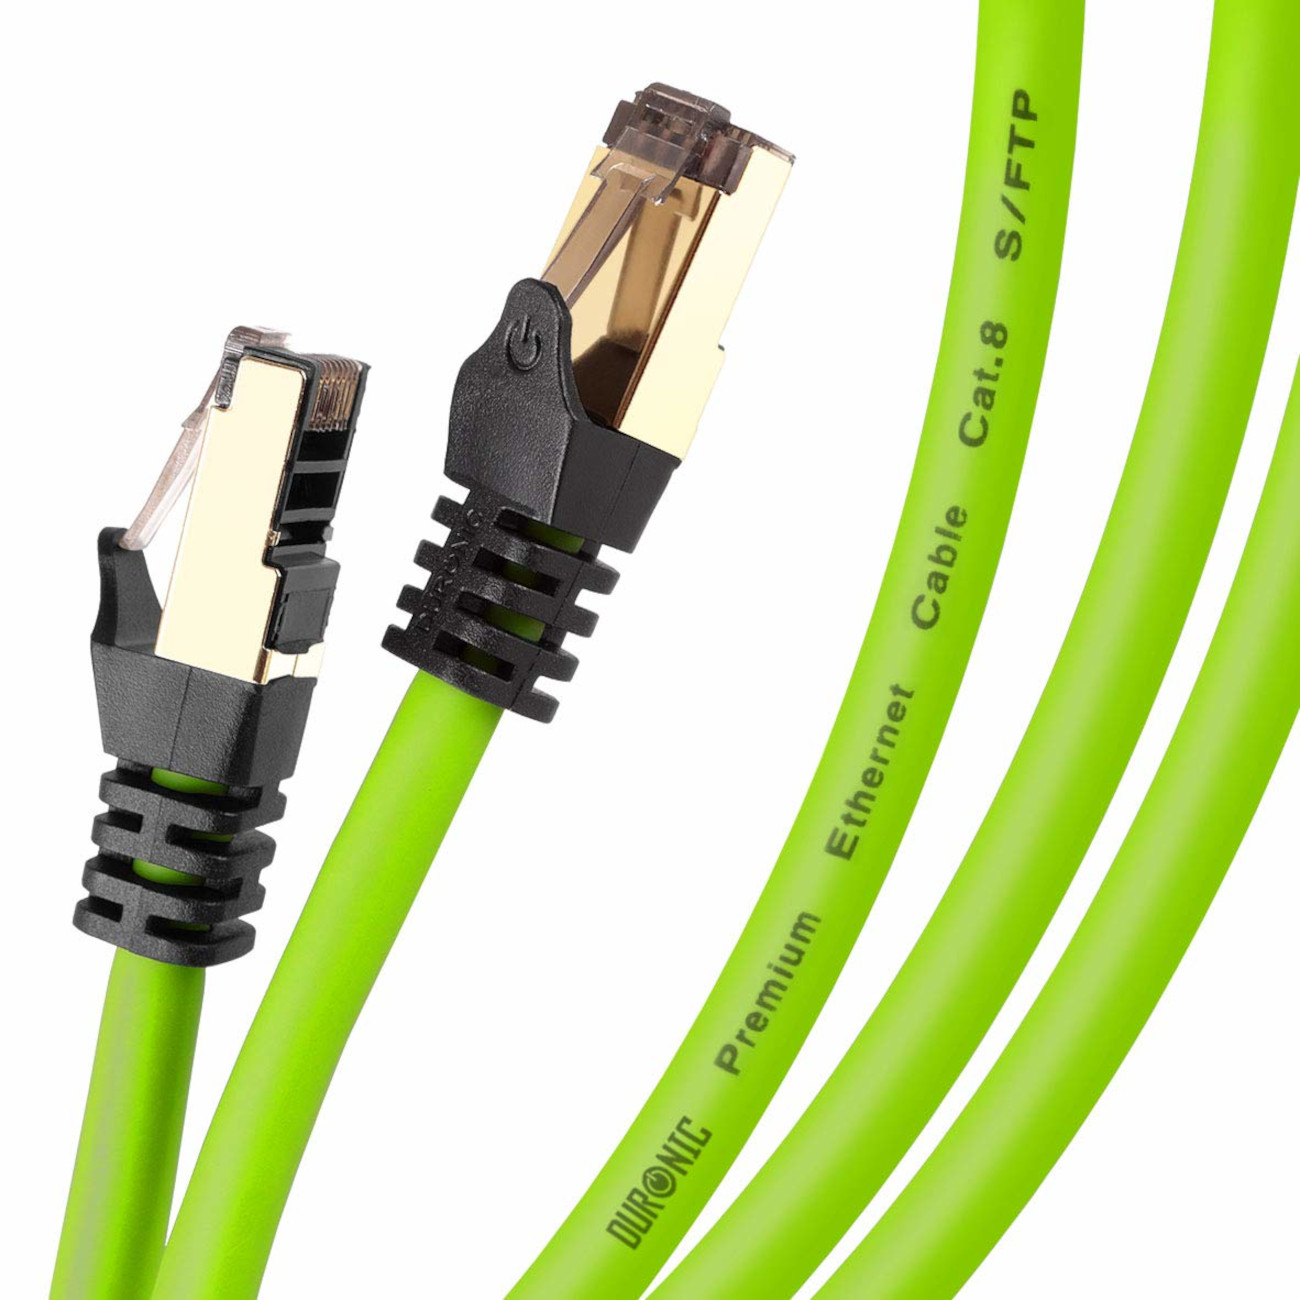 DURONIC CAT8 GN 5m Ethernetkabel Lankabel für Router und 5.000 Patchkabel MB/s Konsole, | | RJ45 | m Netzwerkkabel, 5